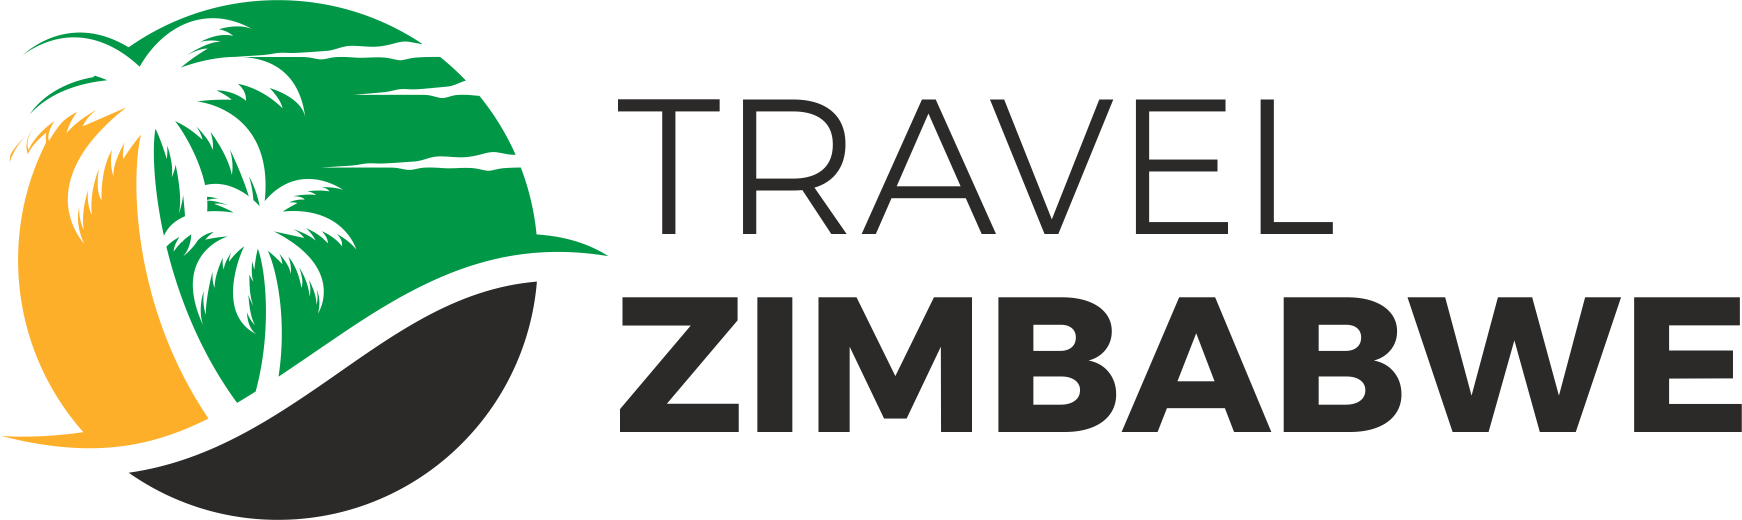 Travel Zimbabwe